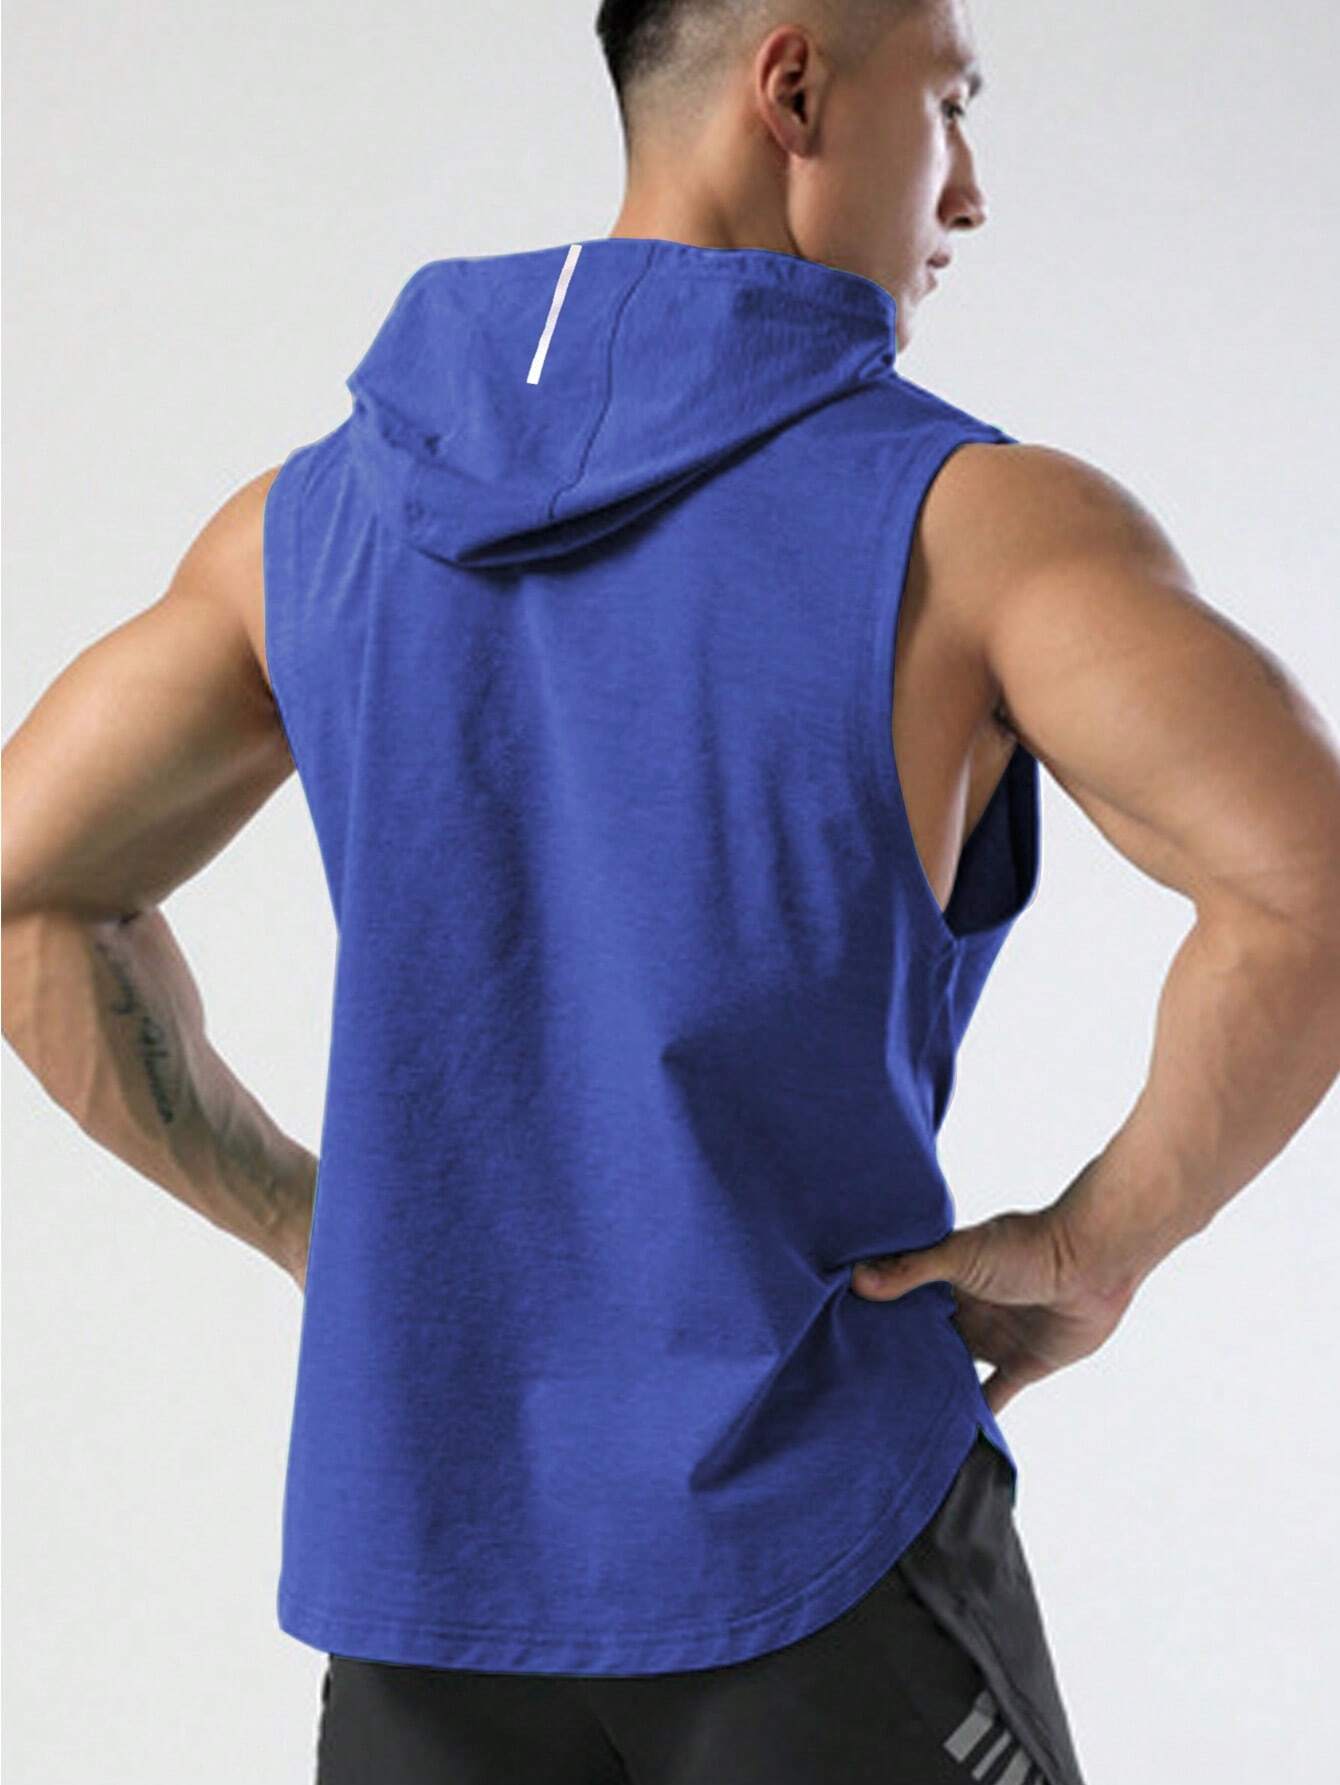 10111 a03-10 Camiseta deportiva con cordón con capucha